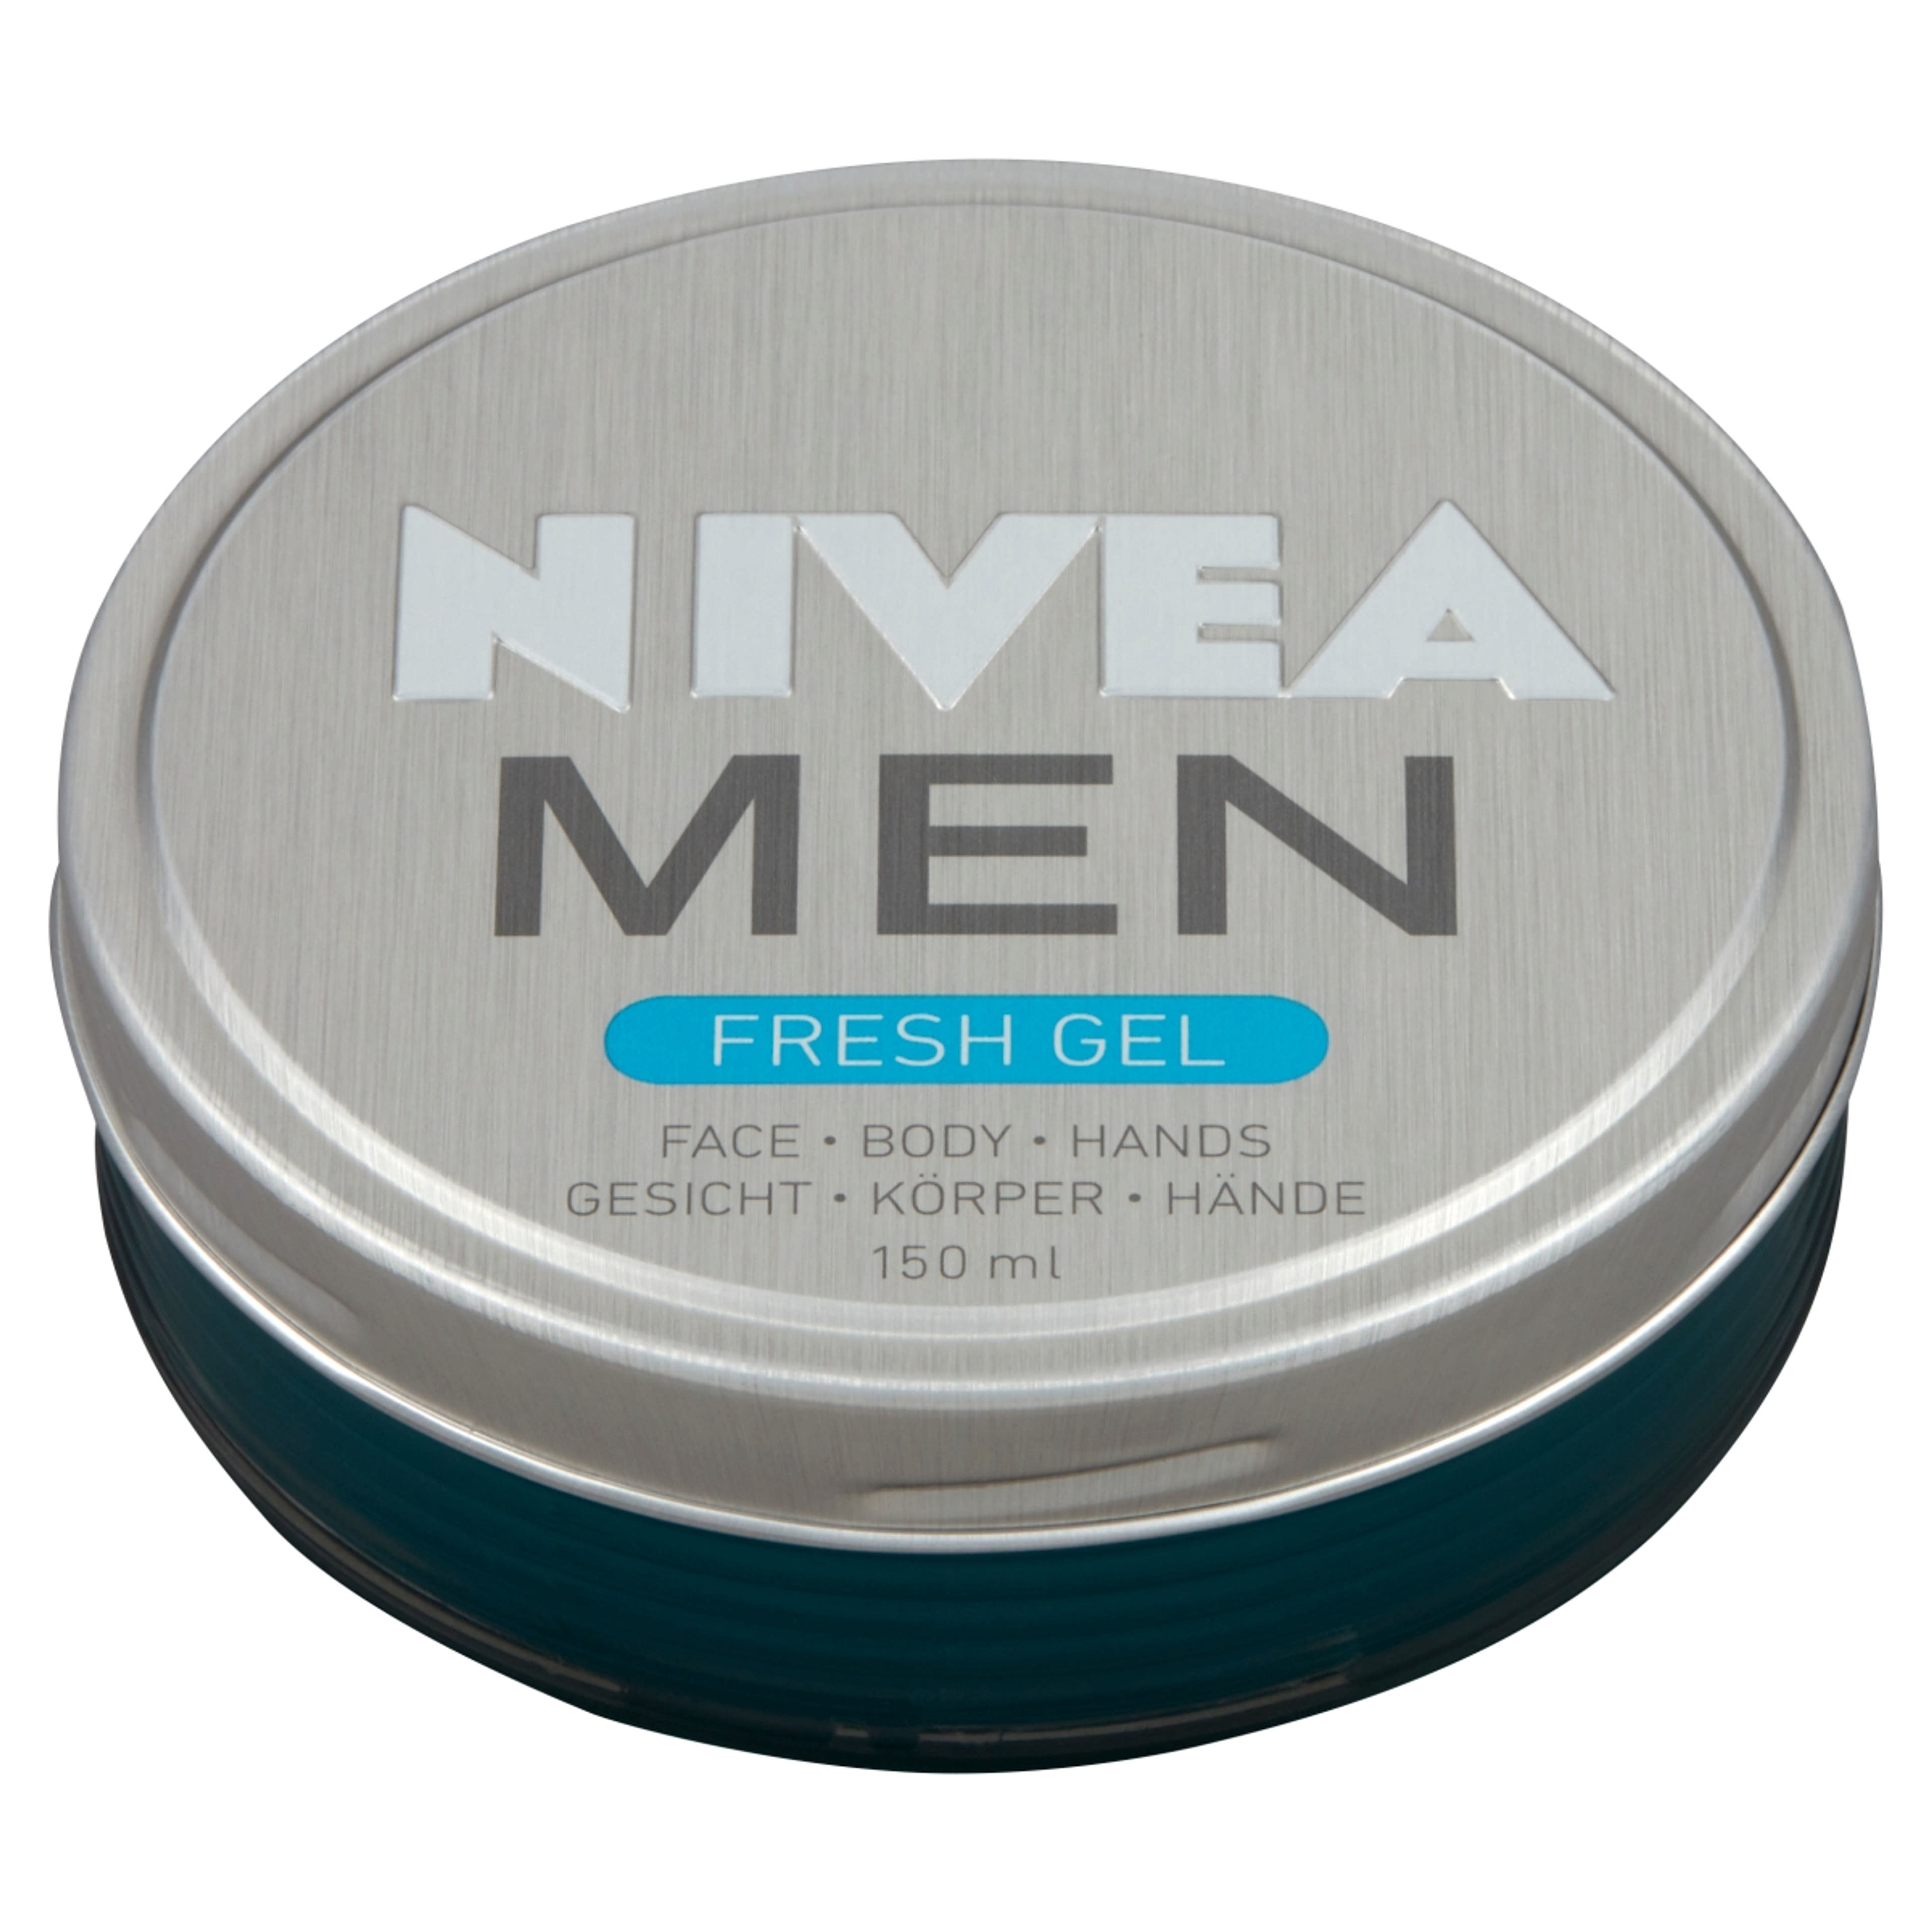 NIVEA MEN Fresh Gél - 150 ml-4